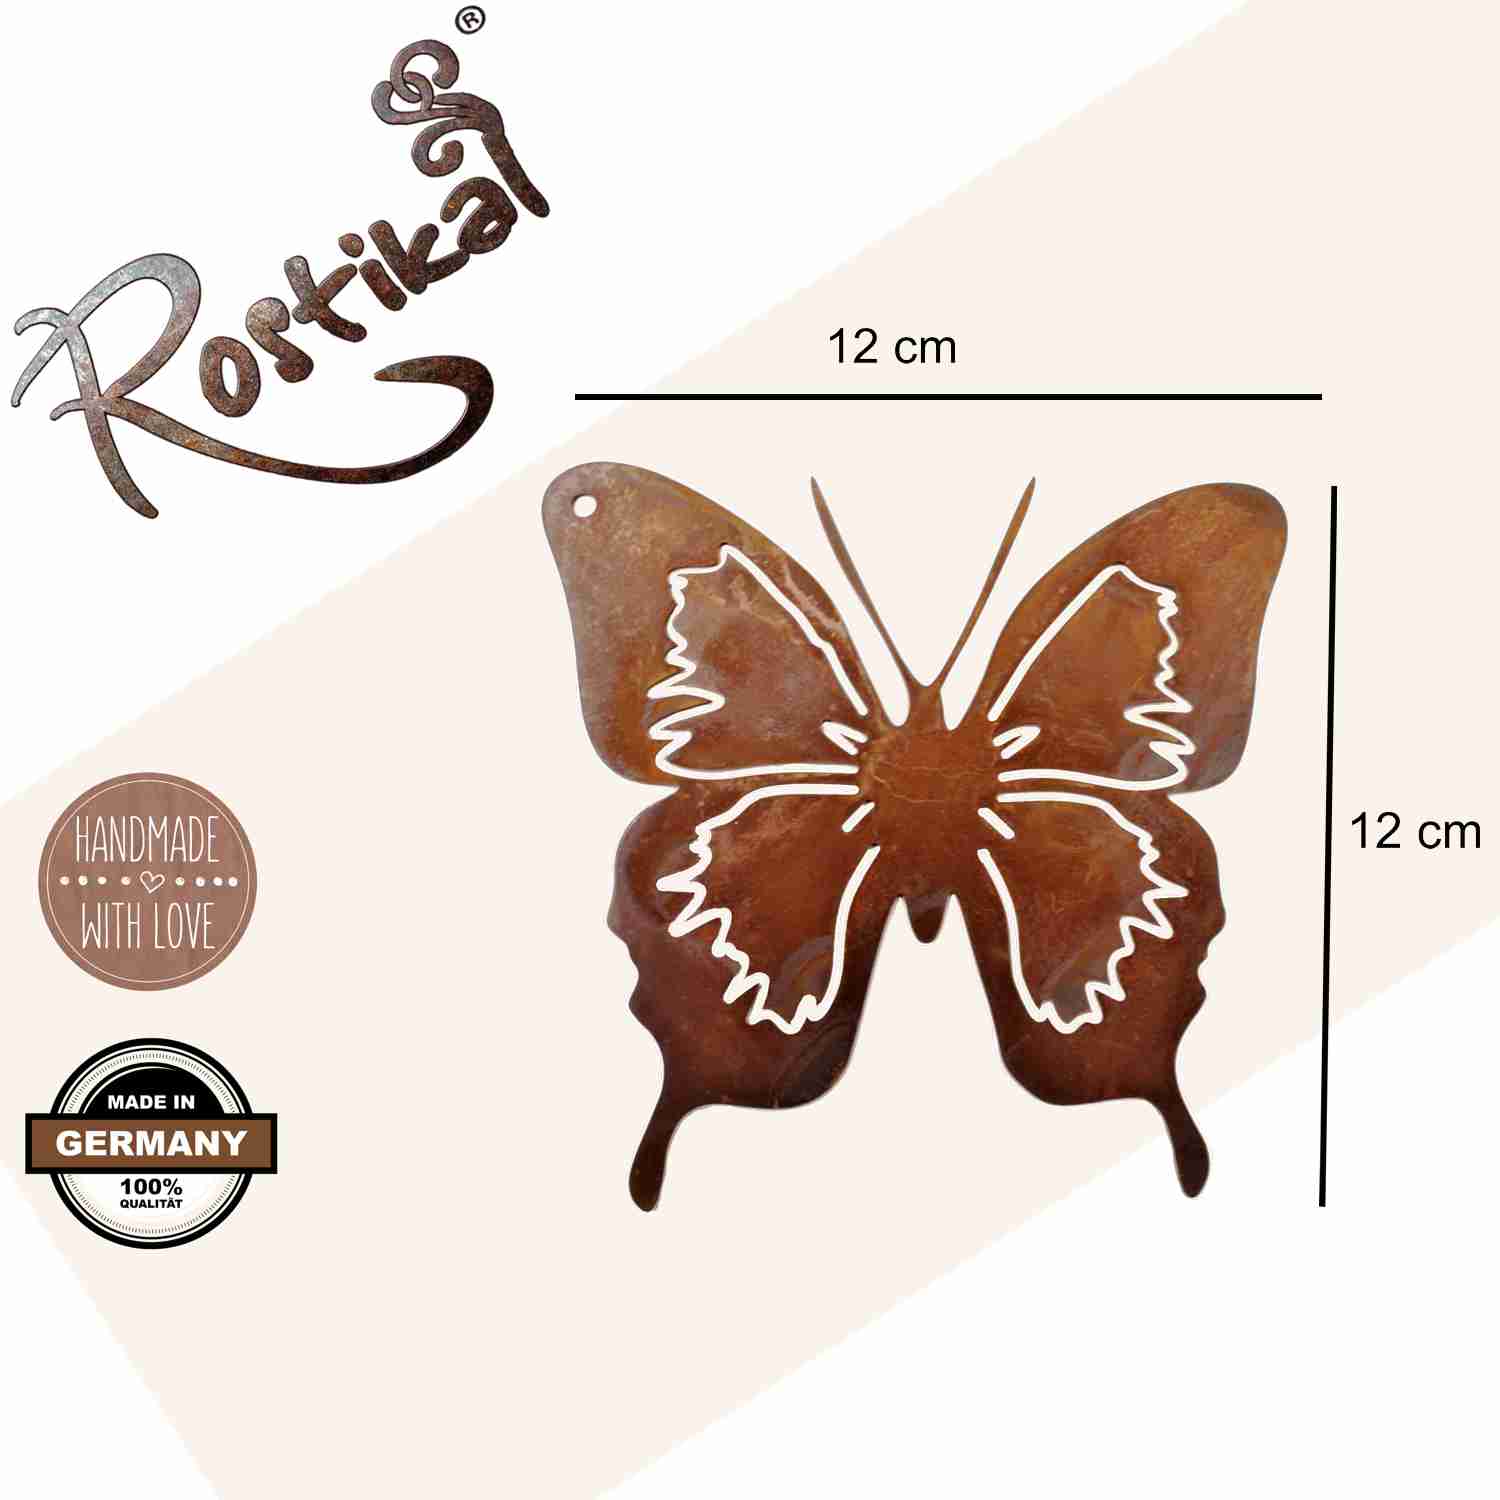 Metall-Schmetterling in Rostoptik - Filigranes Design, perfekt als Hängedeko oder Gartenstecker für Wohnräume und Außenbereiche